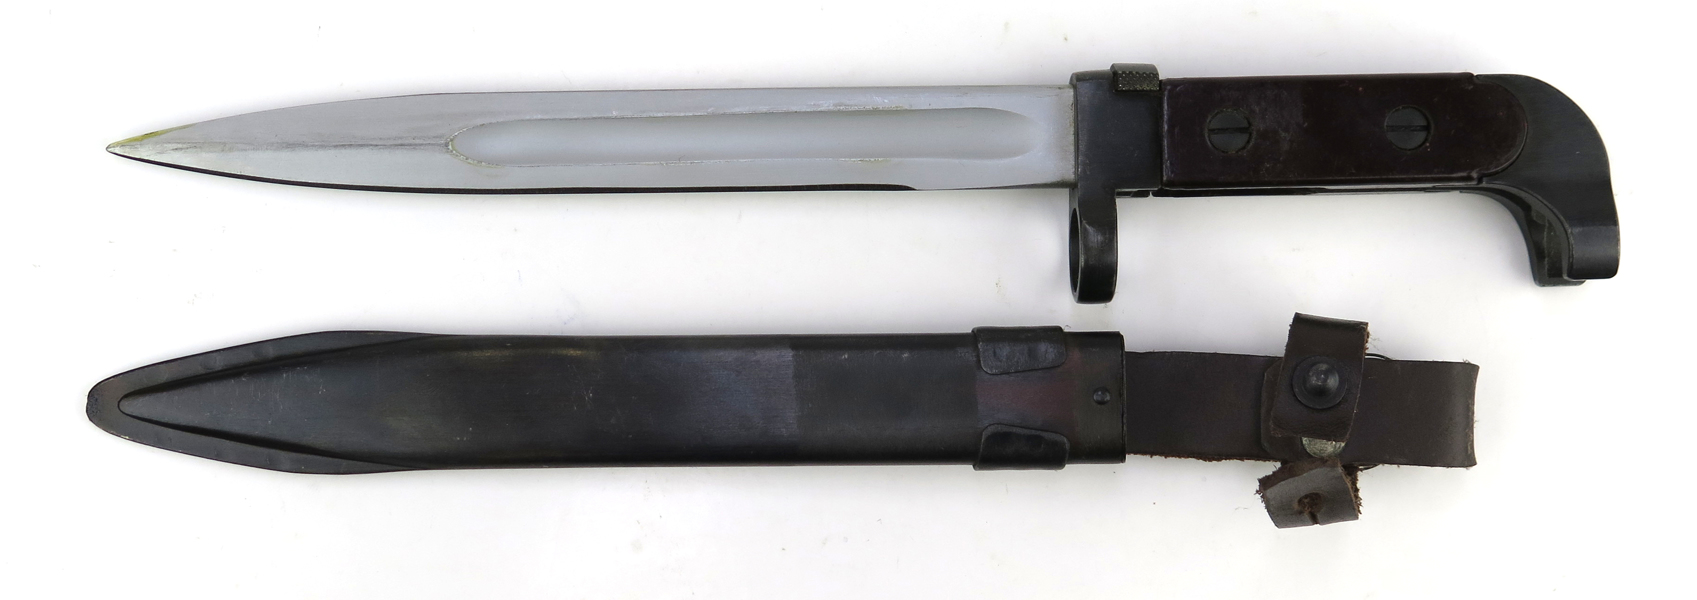 Knivbajonett i balja, Ryssland M/1947, för Automatkarbin M/1947 (AK47 Kalashnikov), _20133a_lg.jpeg